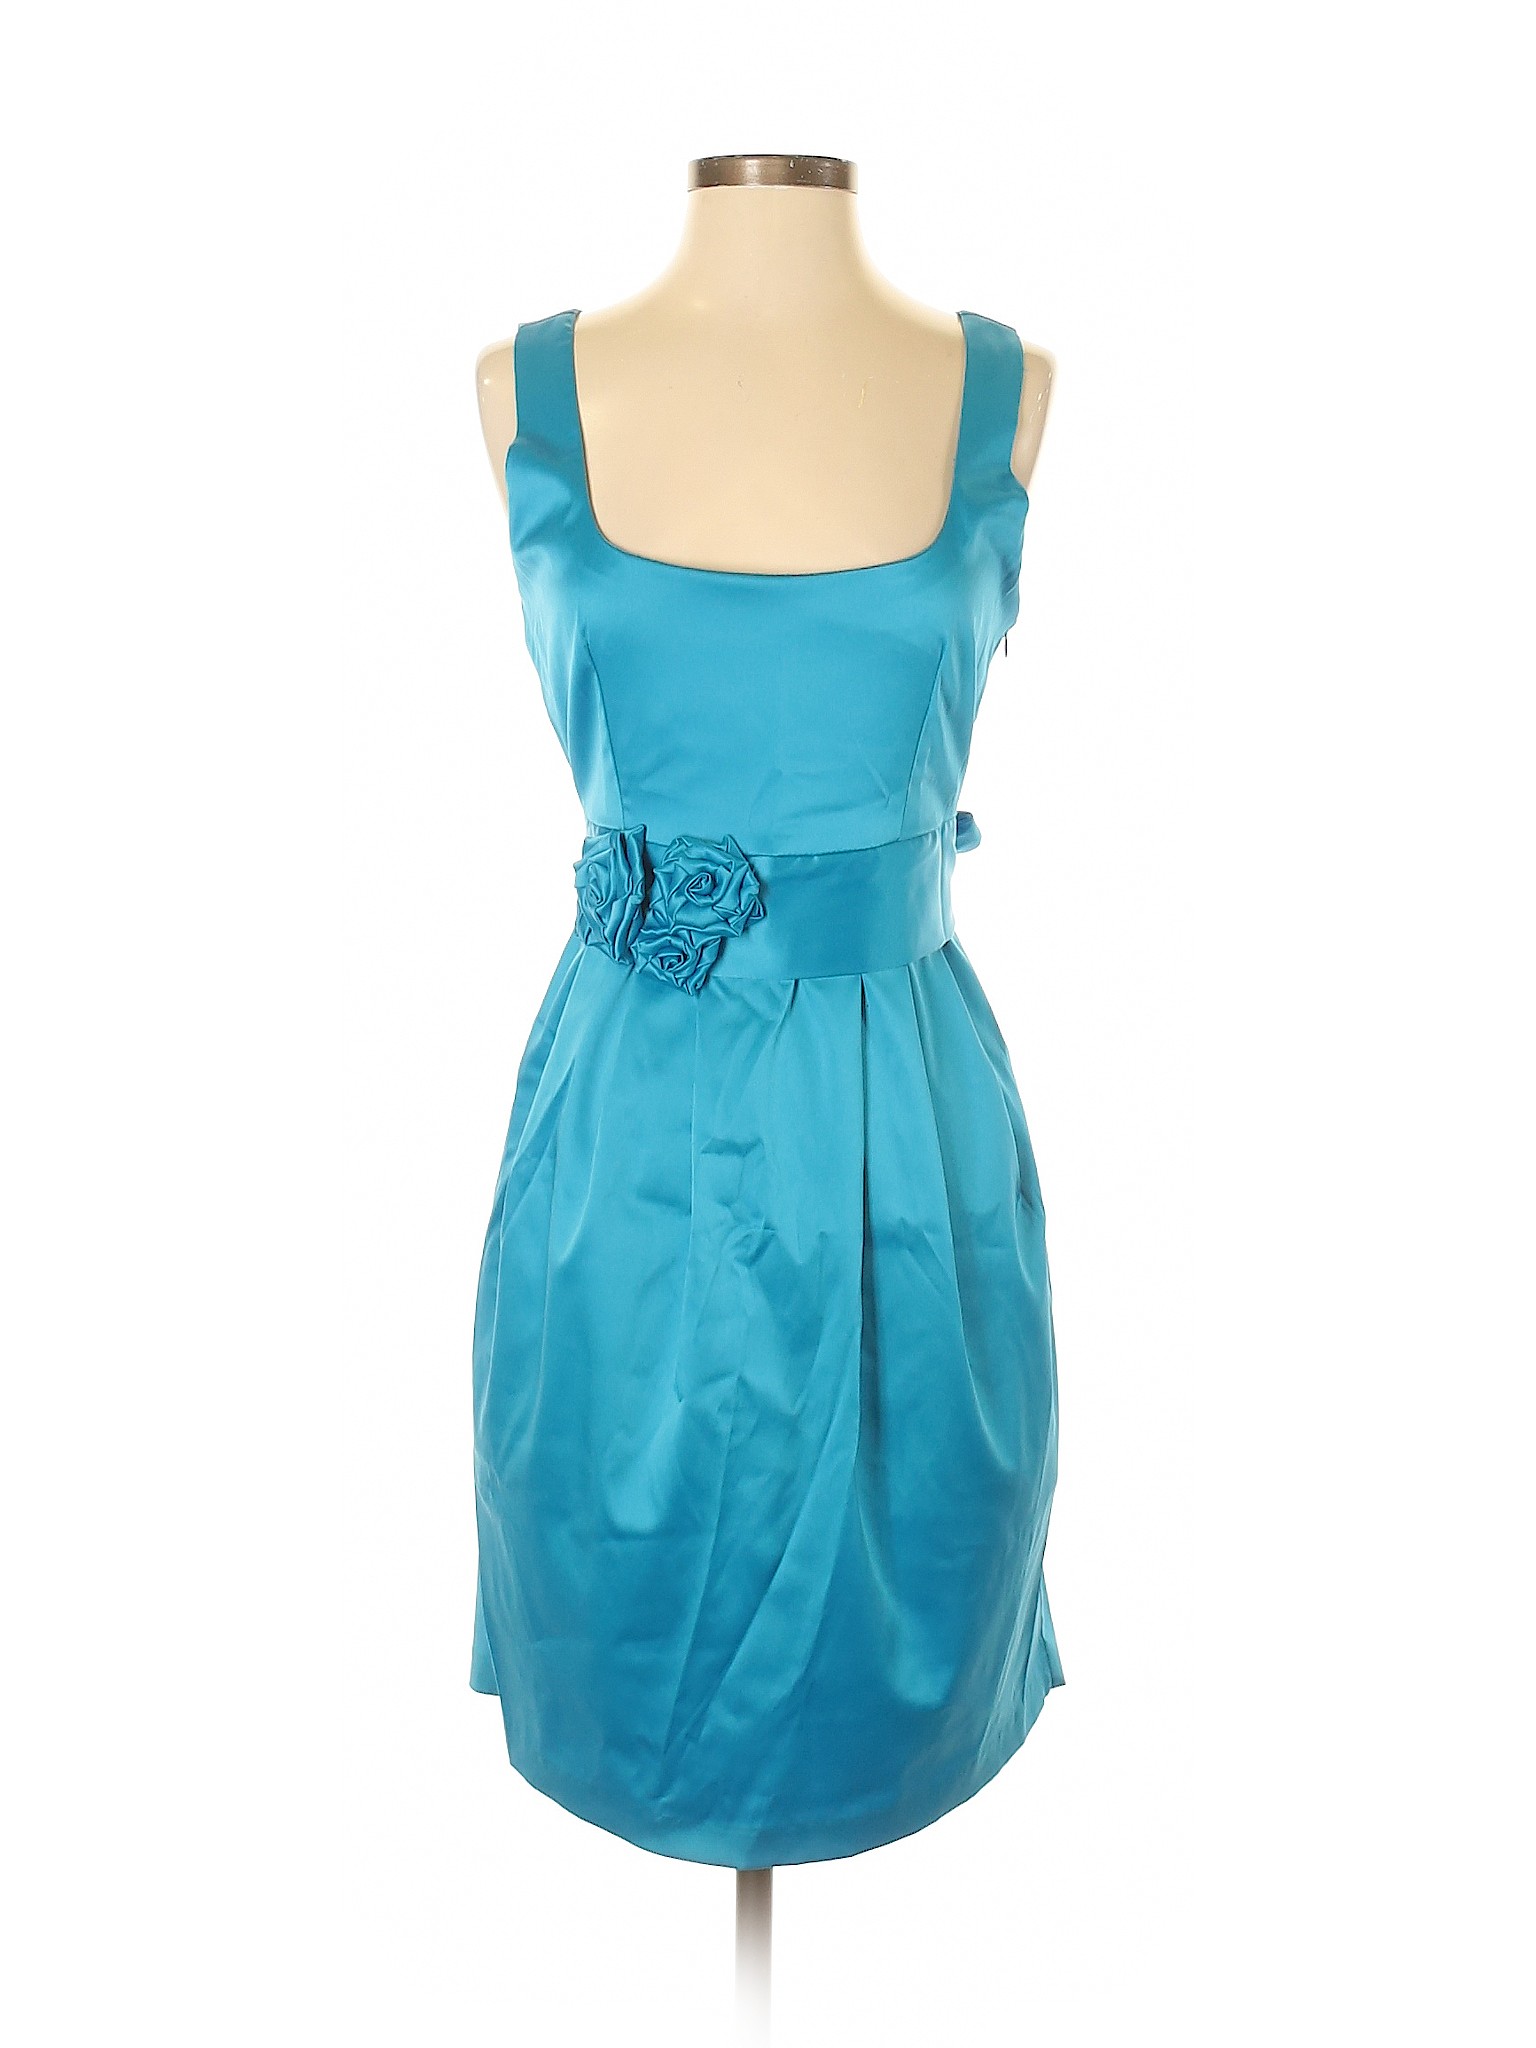 Eva Franco Solid Blue Cocktail Dress Size 4 - 87% off | thredUP